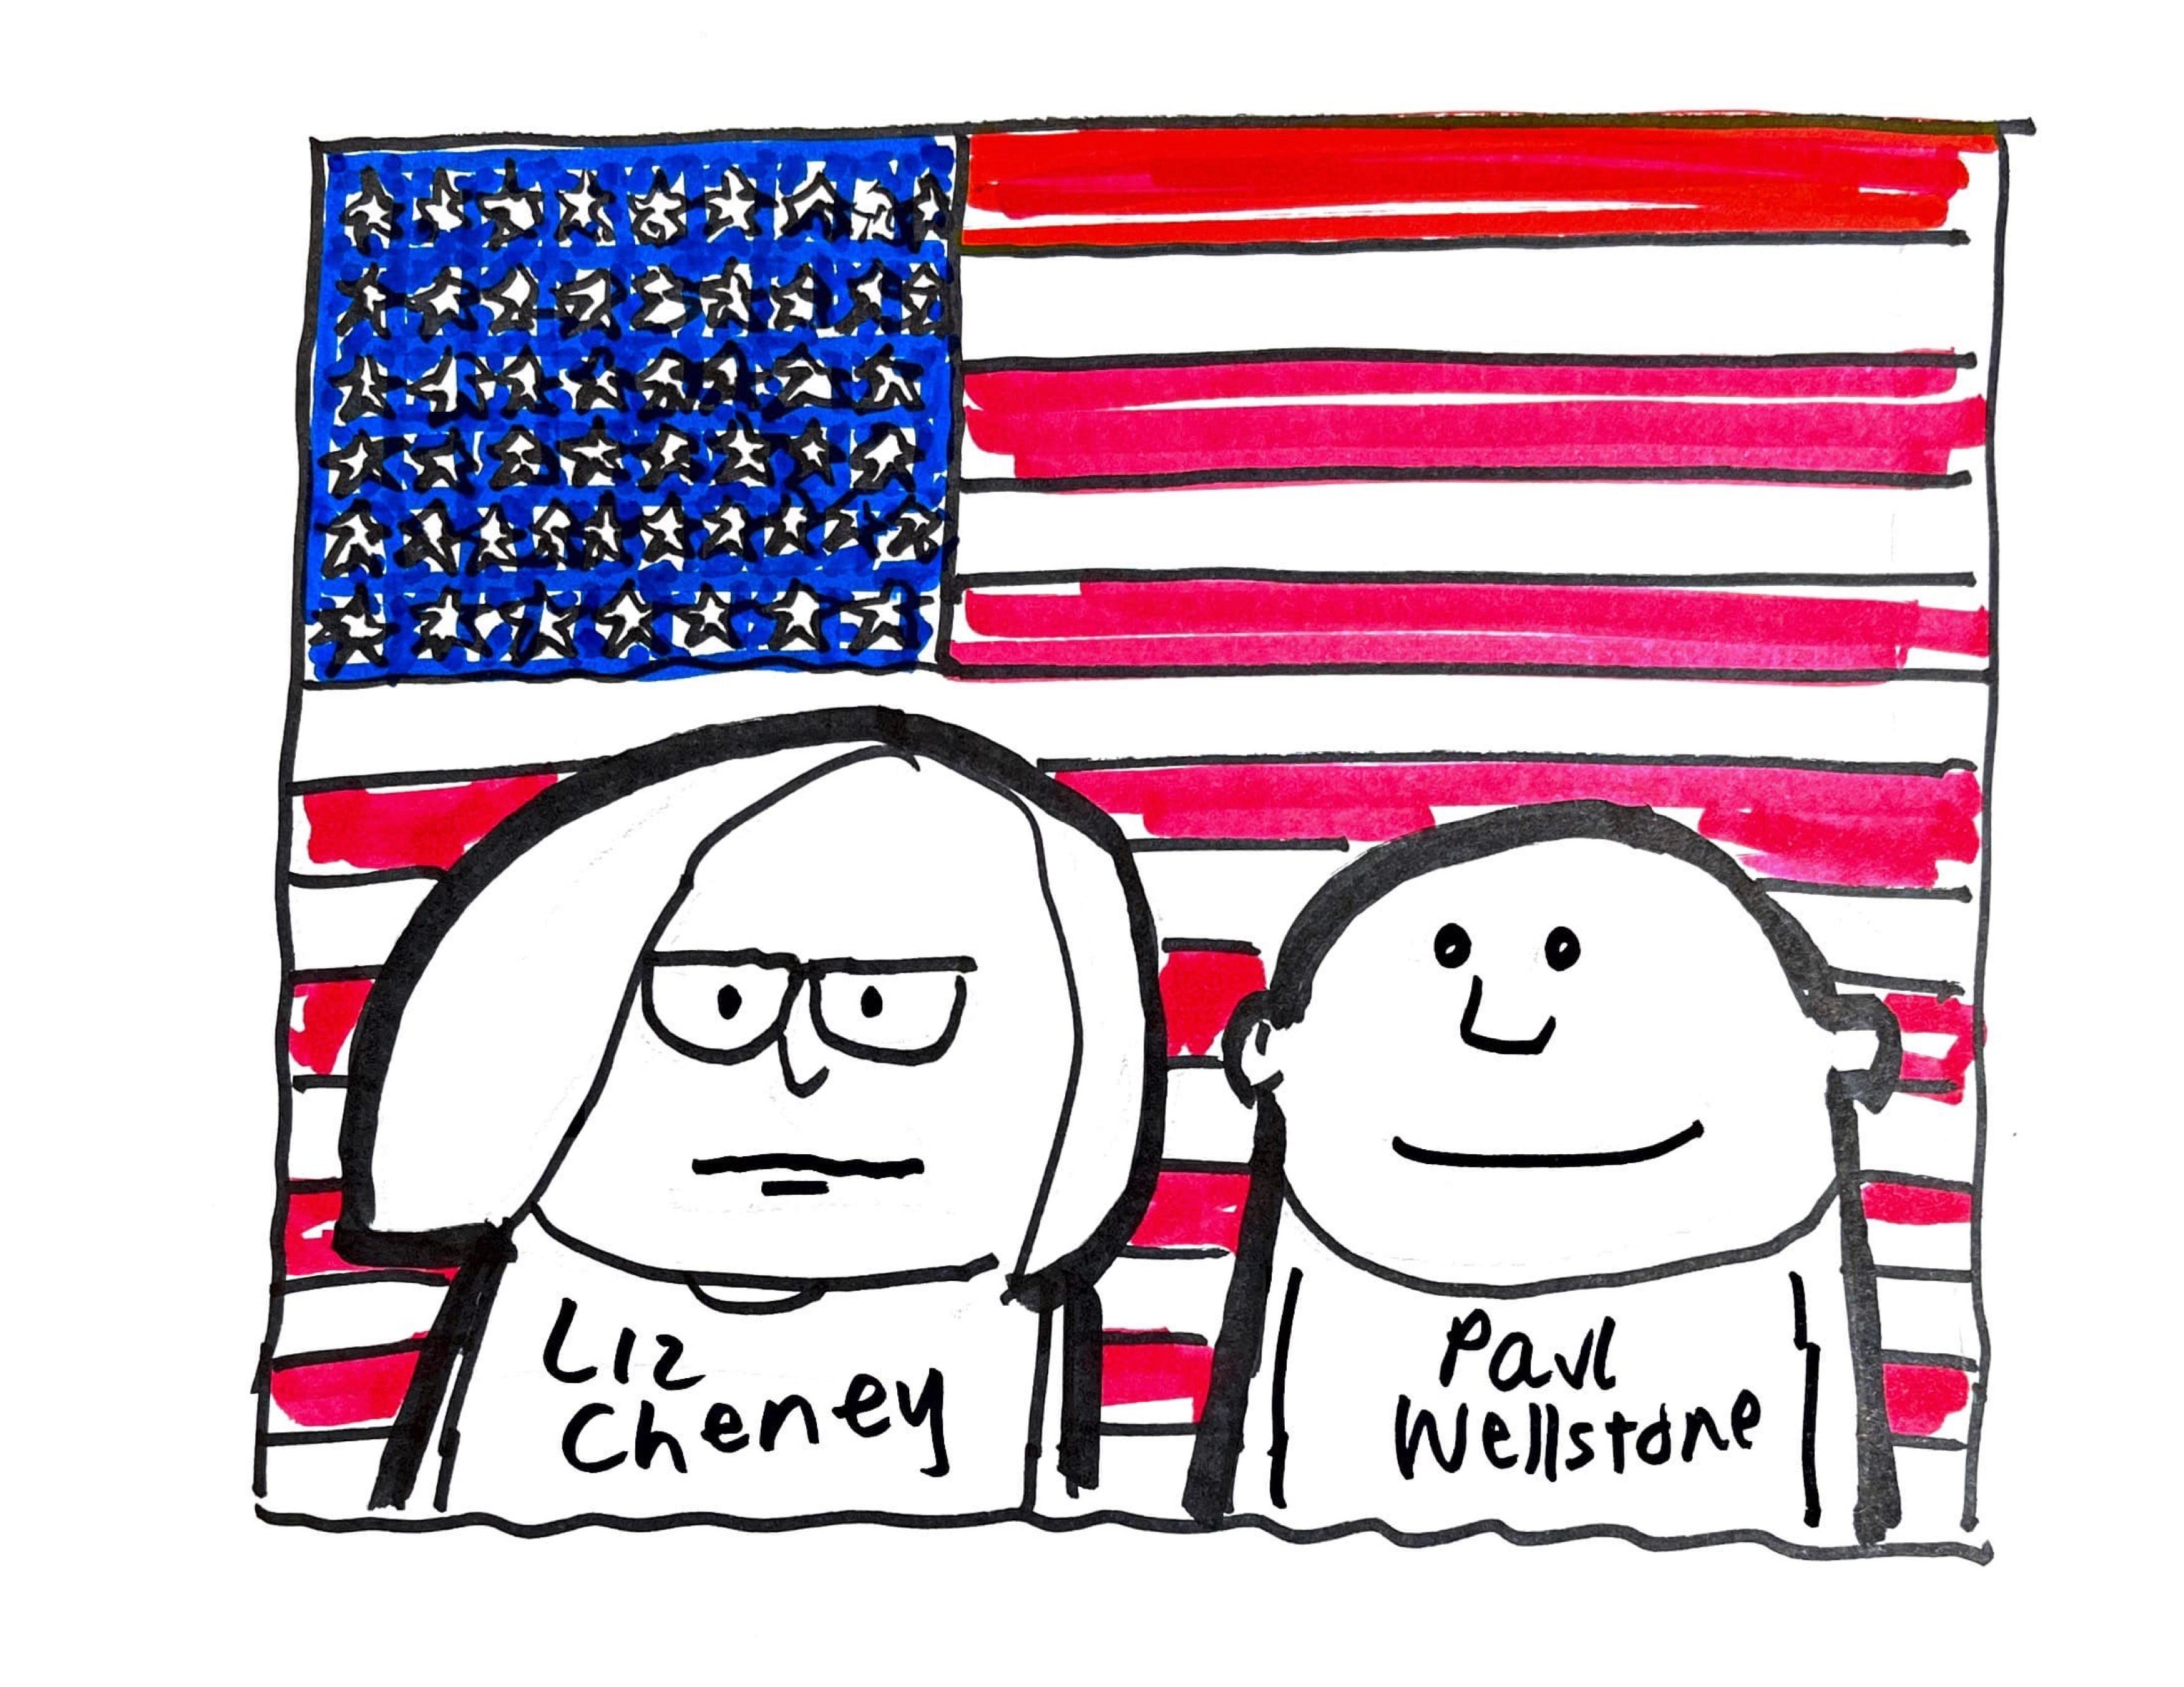 Liz Cheney for President? - Robert Reich